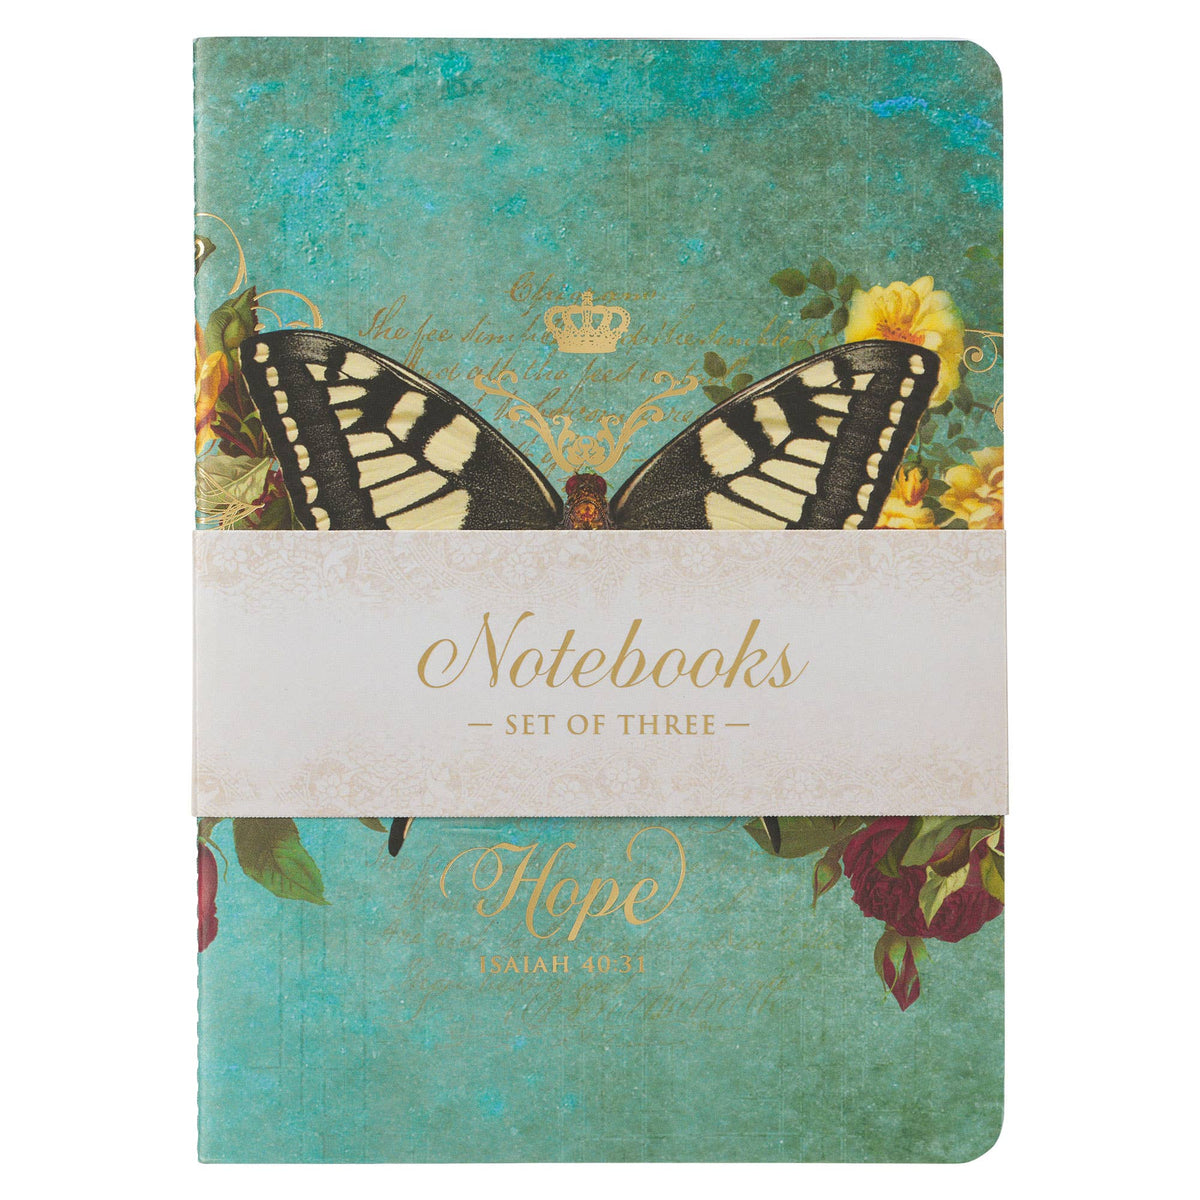 Hope Grace and Be Still Secret Garden Butterfly Notebook Set